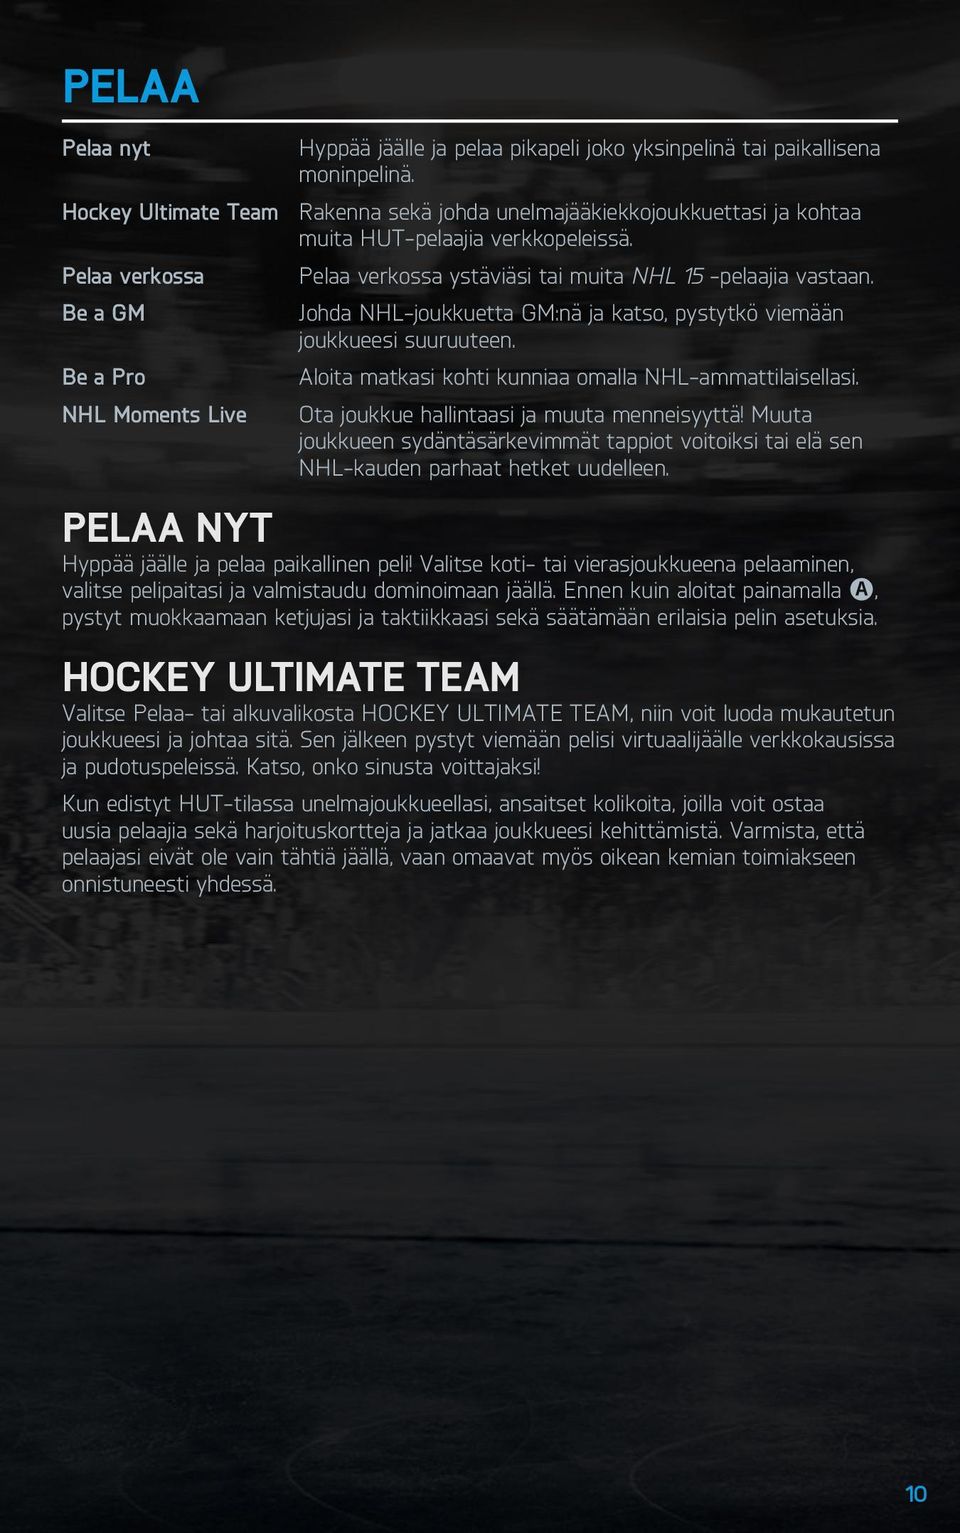 Be a GM Johda NHL-joukkuetta GM:nä ja katso, pystytkö viemään joukkueesi suuruuteen. Be a Pro Aloita matkasi kohti kunniaa omalla NHL-ammattilaisellasi.